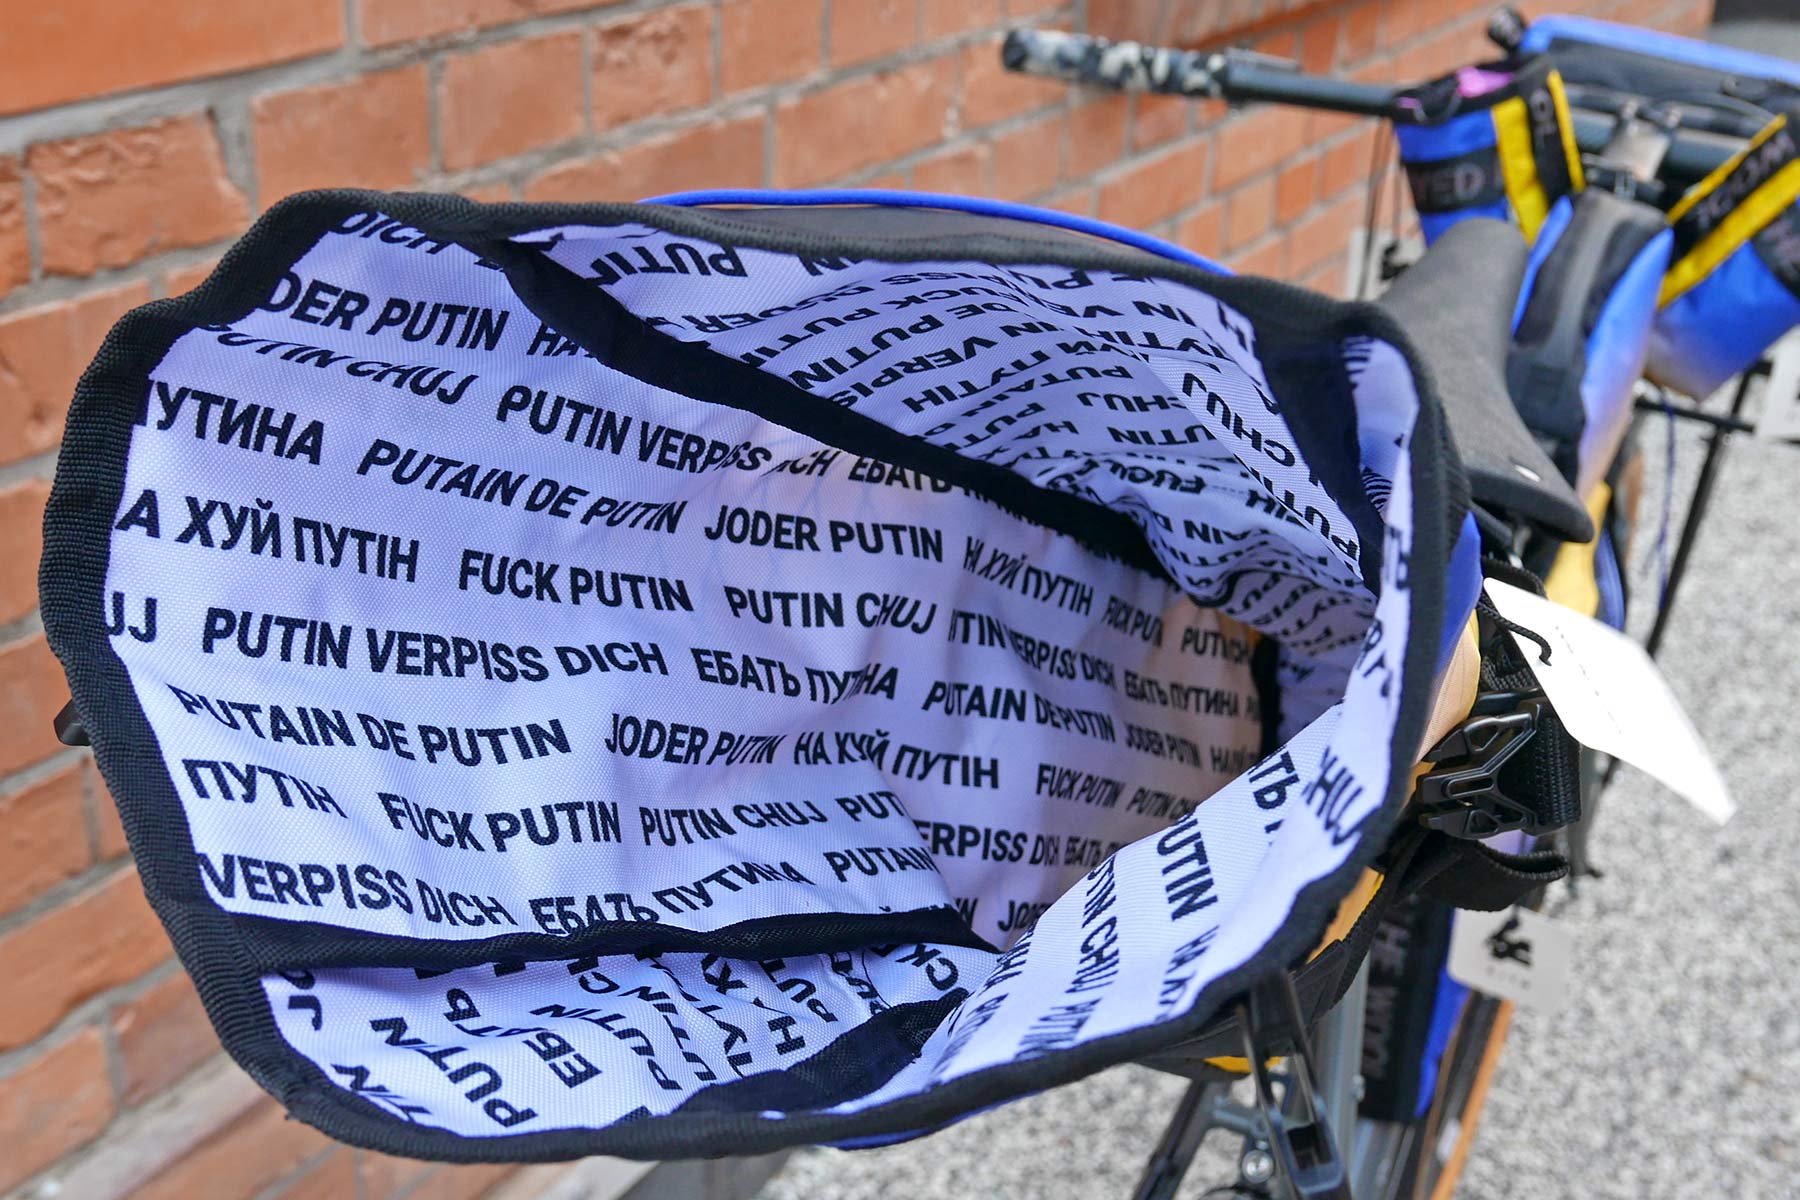 Dyed in the Wool BLB custom F*%k Putin bikepacking bag raffle for Ukraine, inside message